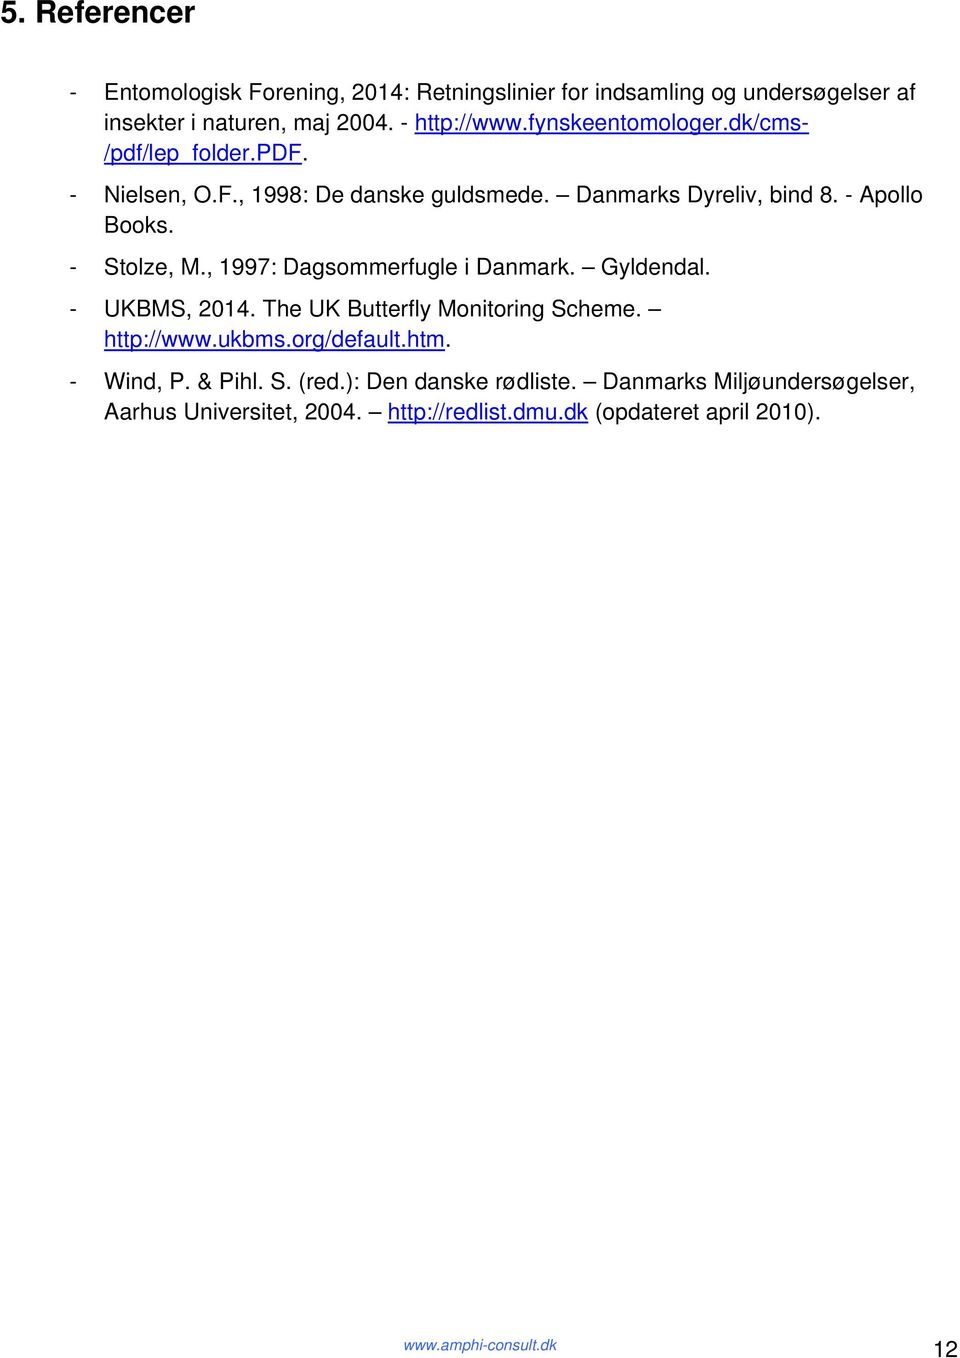 - Stolze, M., 1997: Dagsommerfugle i Danmark. Gyldendal. - UKBMS, 2014. The UK Butterfly Monitoring Scheme. http://www.ukbms.org/default.htm.